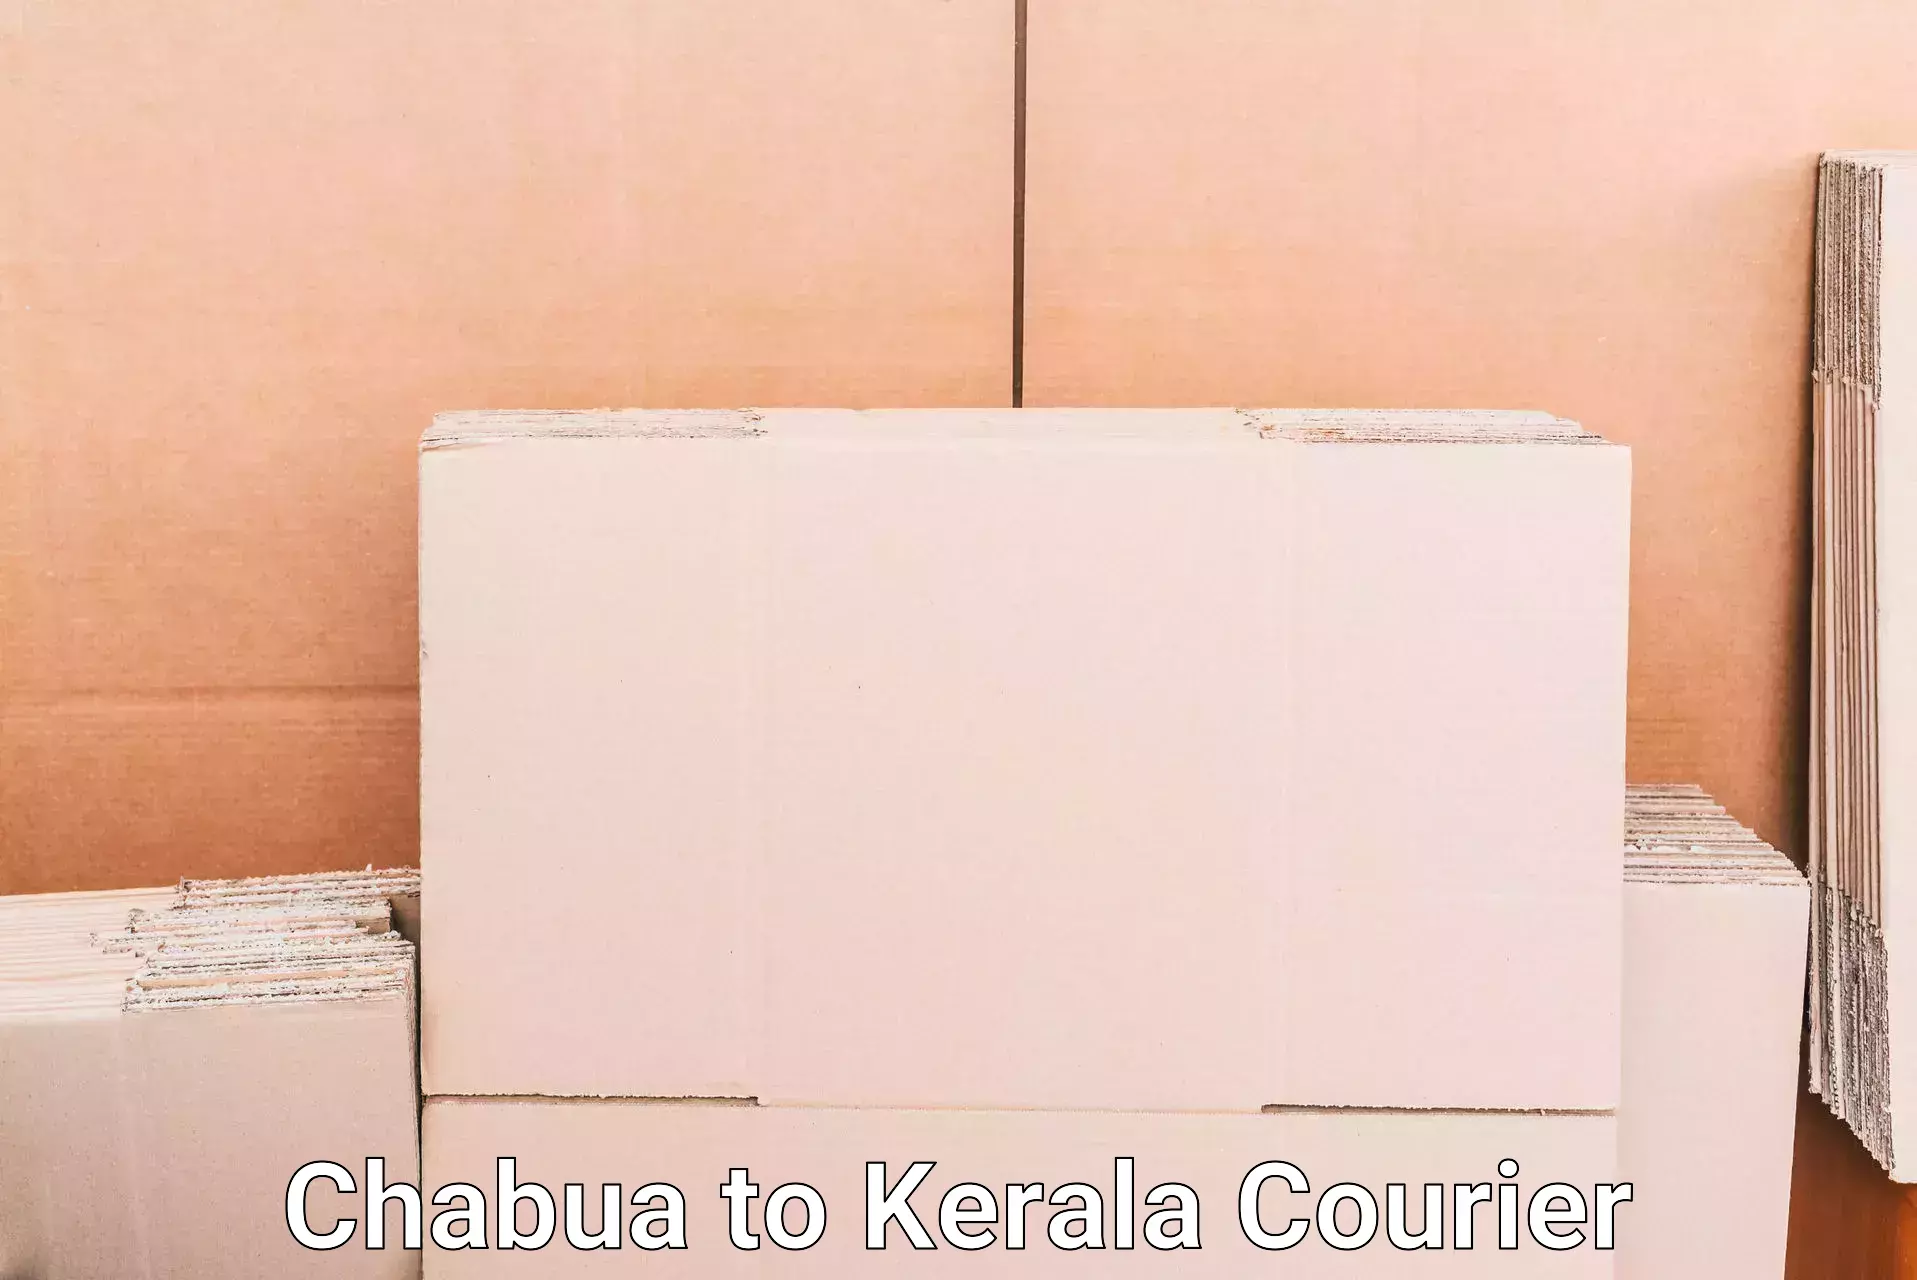 Luggage dispatch service Chabua to Thiruvananthapuram